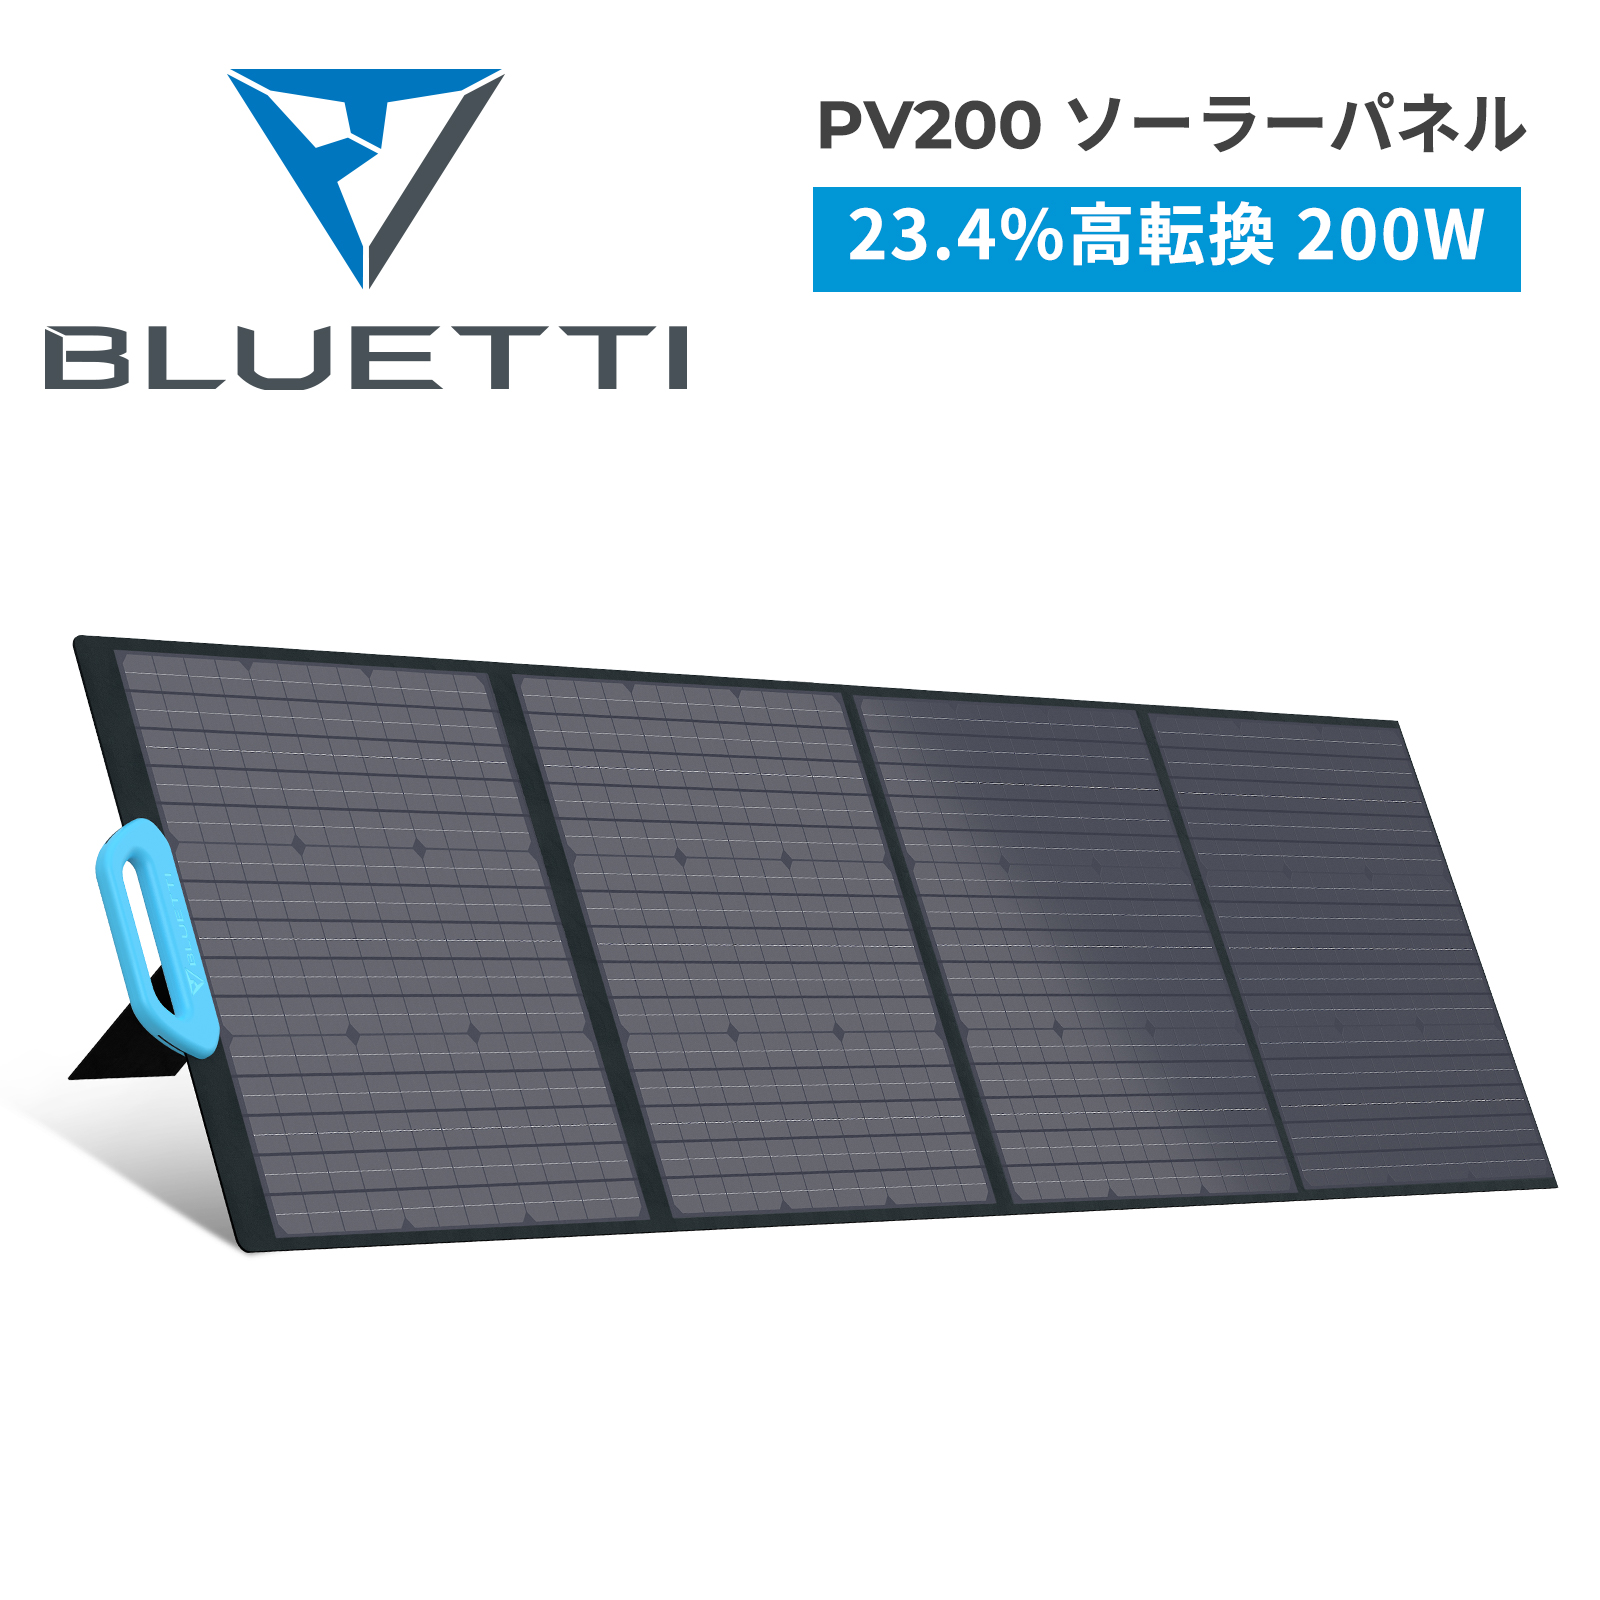 結婚祝い BLUETTI JAPAN ショップBLUETTI PV200 ソーラーパネル 200W